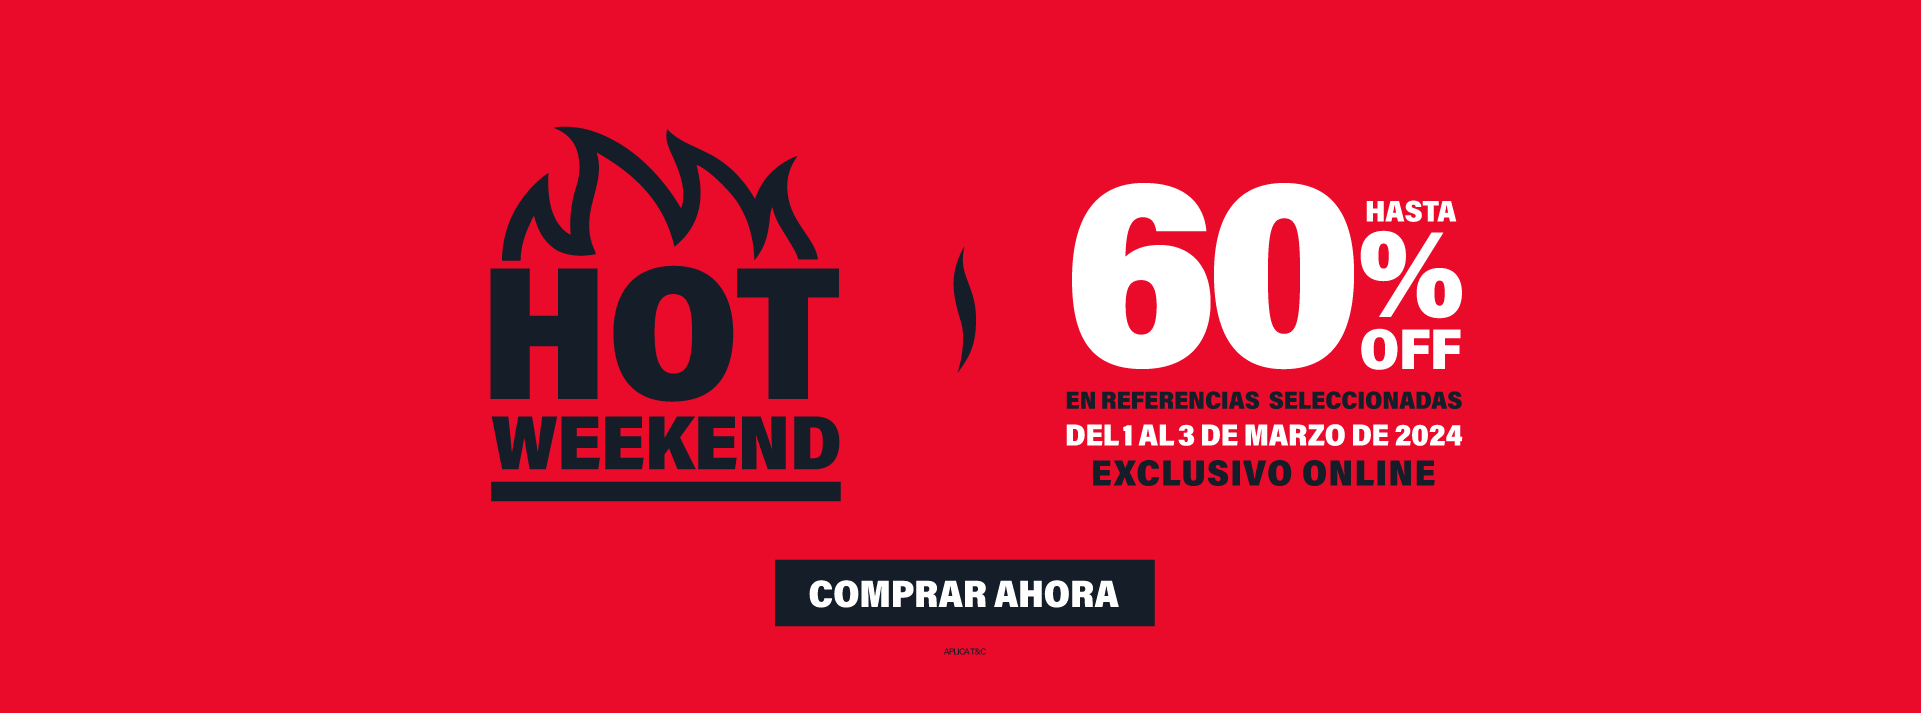 Hot Weekend | Hasta 60% OFF Ref. Seleccionadas | Exclusivo Online